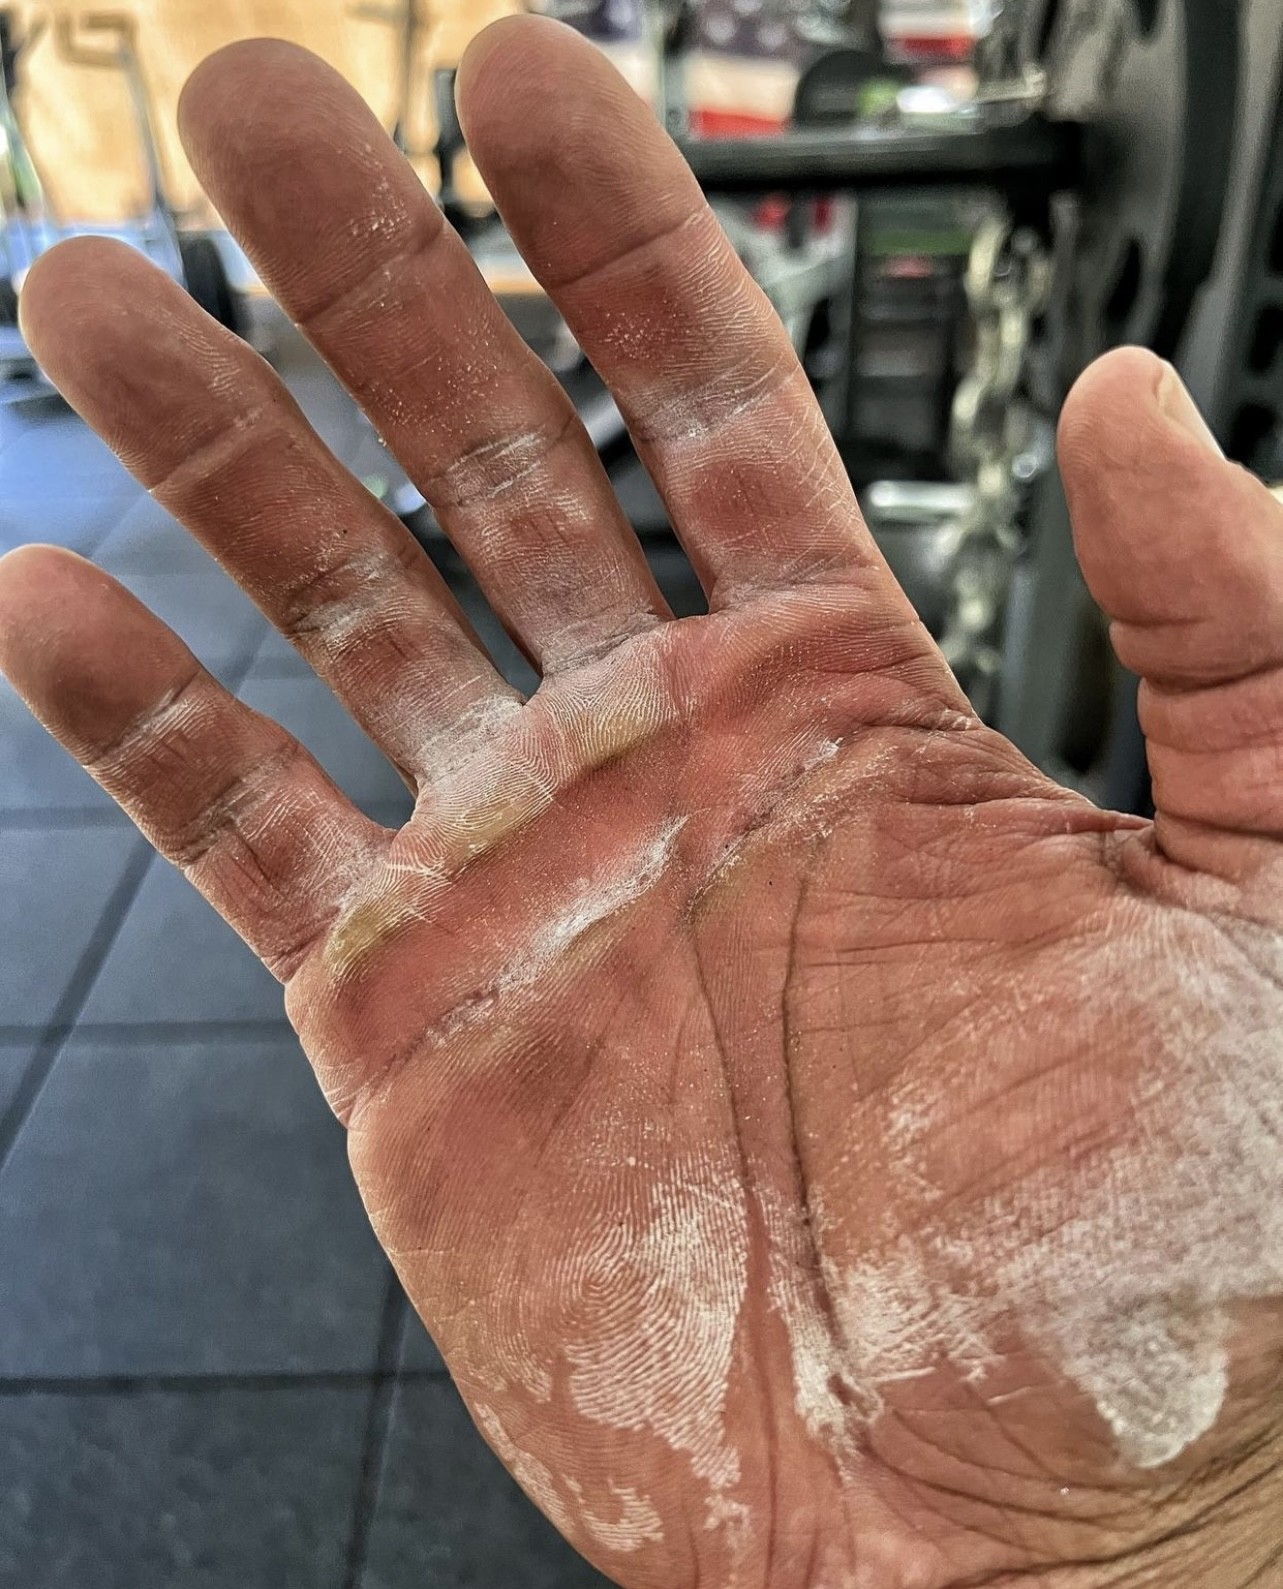 The Rock publicou recentemente sua mão estragada pelos treinos (Foto: Reprodução/Twitter)